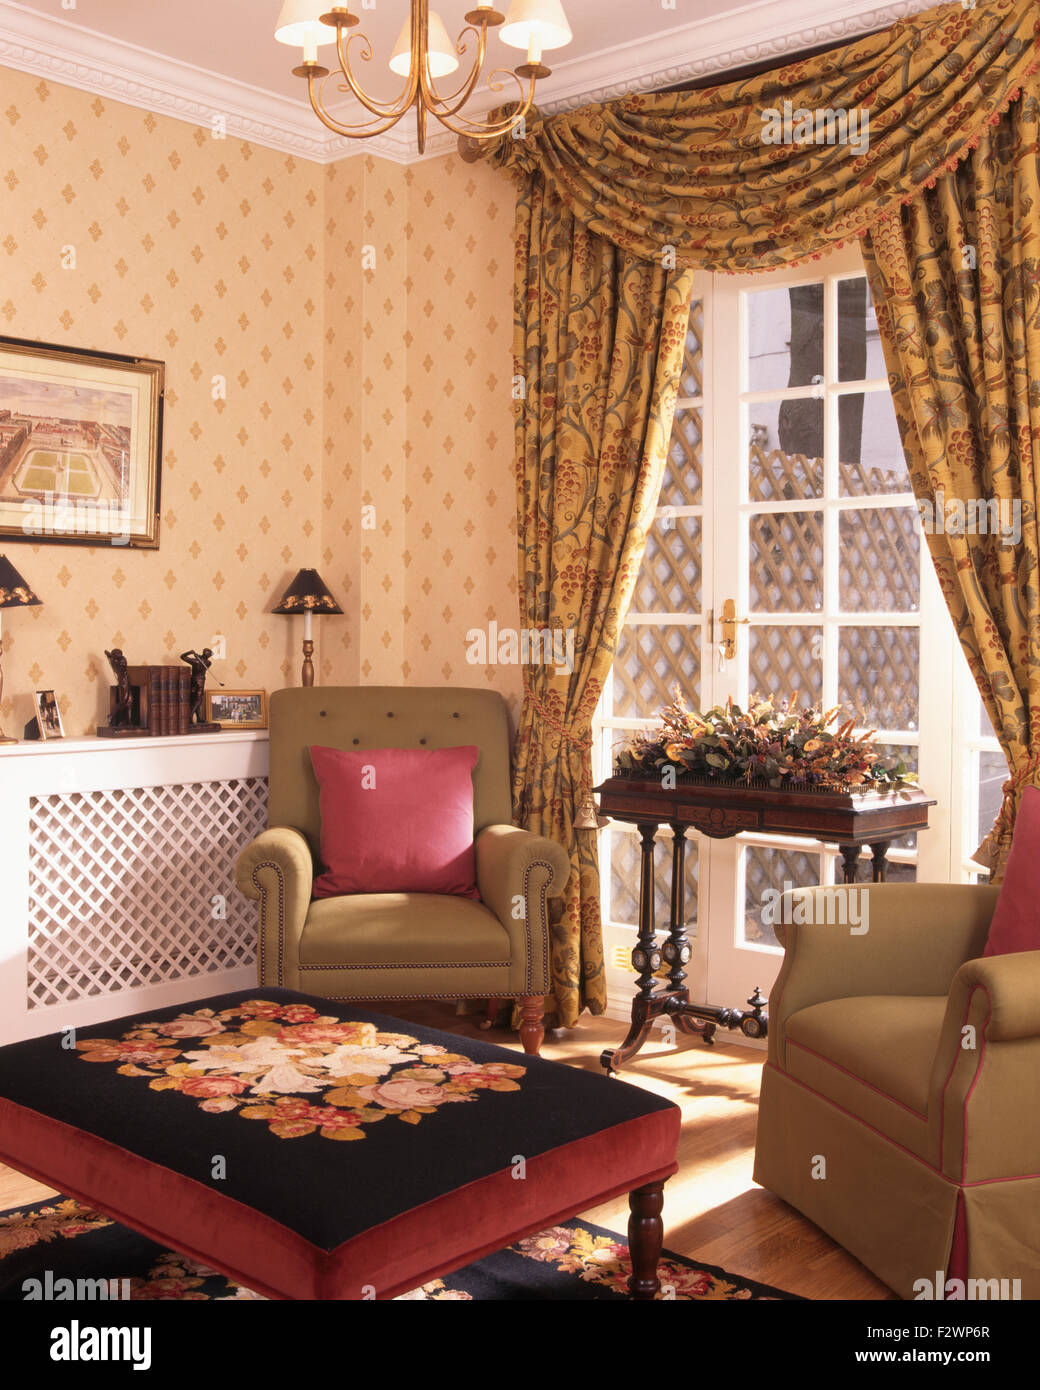 Arazzo sgabello coperte e tende swagged negli anni novanta soggiorno con carta da parati con motivi geometrici e poltrone di colore beige Foto Stock